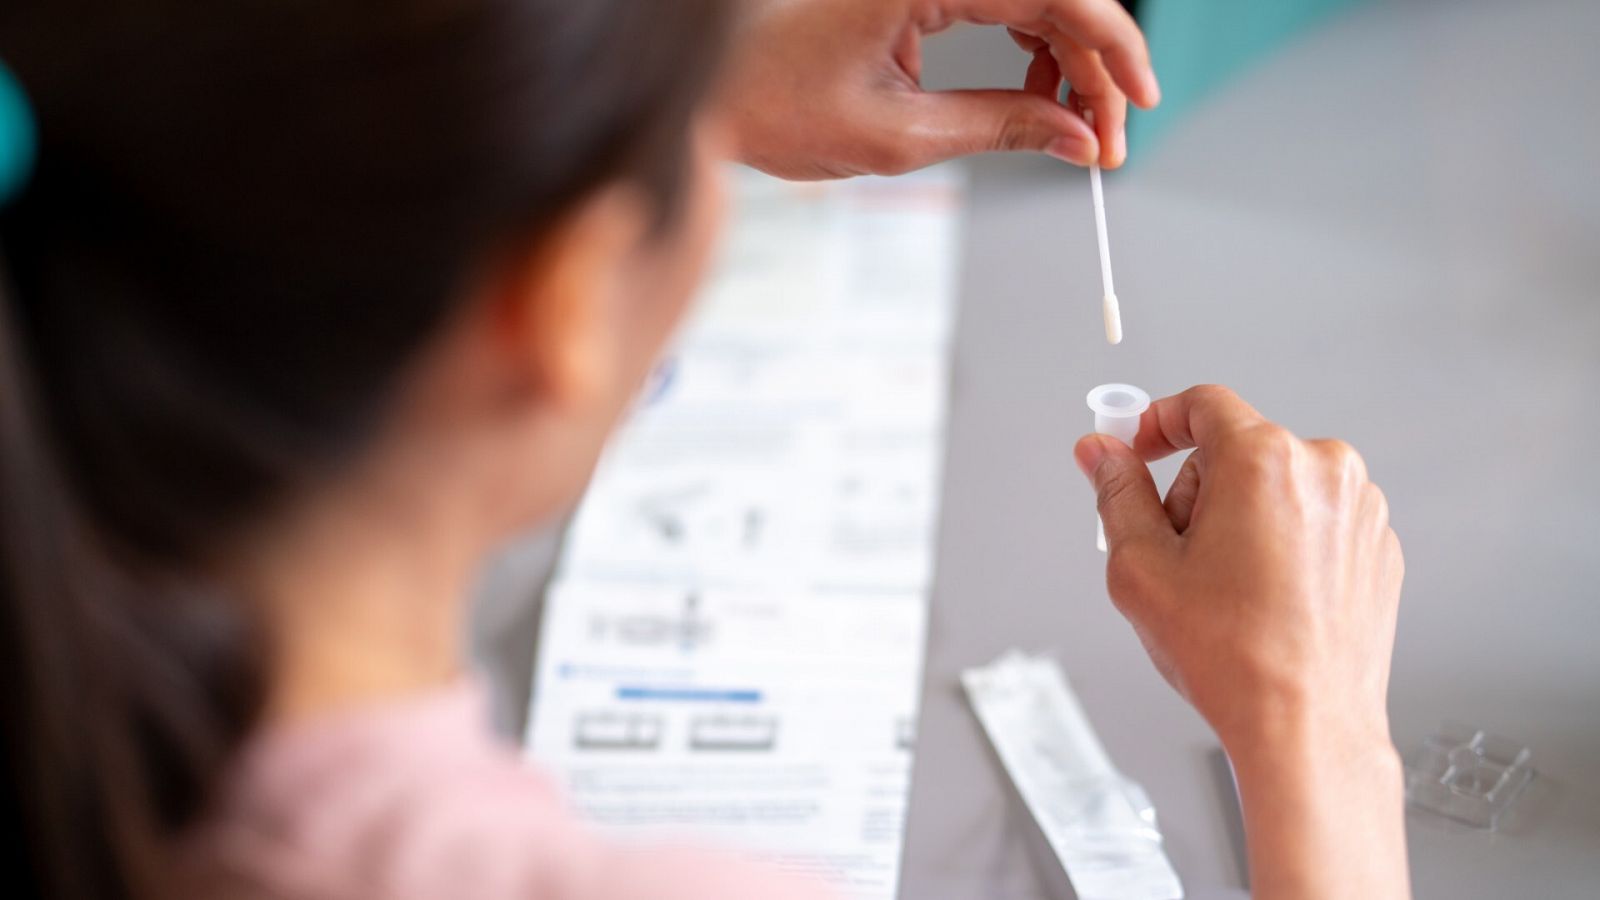 Una mujer manipula una prueba rápida de antígenos para el diagnóstico de COVID-19 o gripe, en una imagen de archivo.